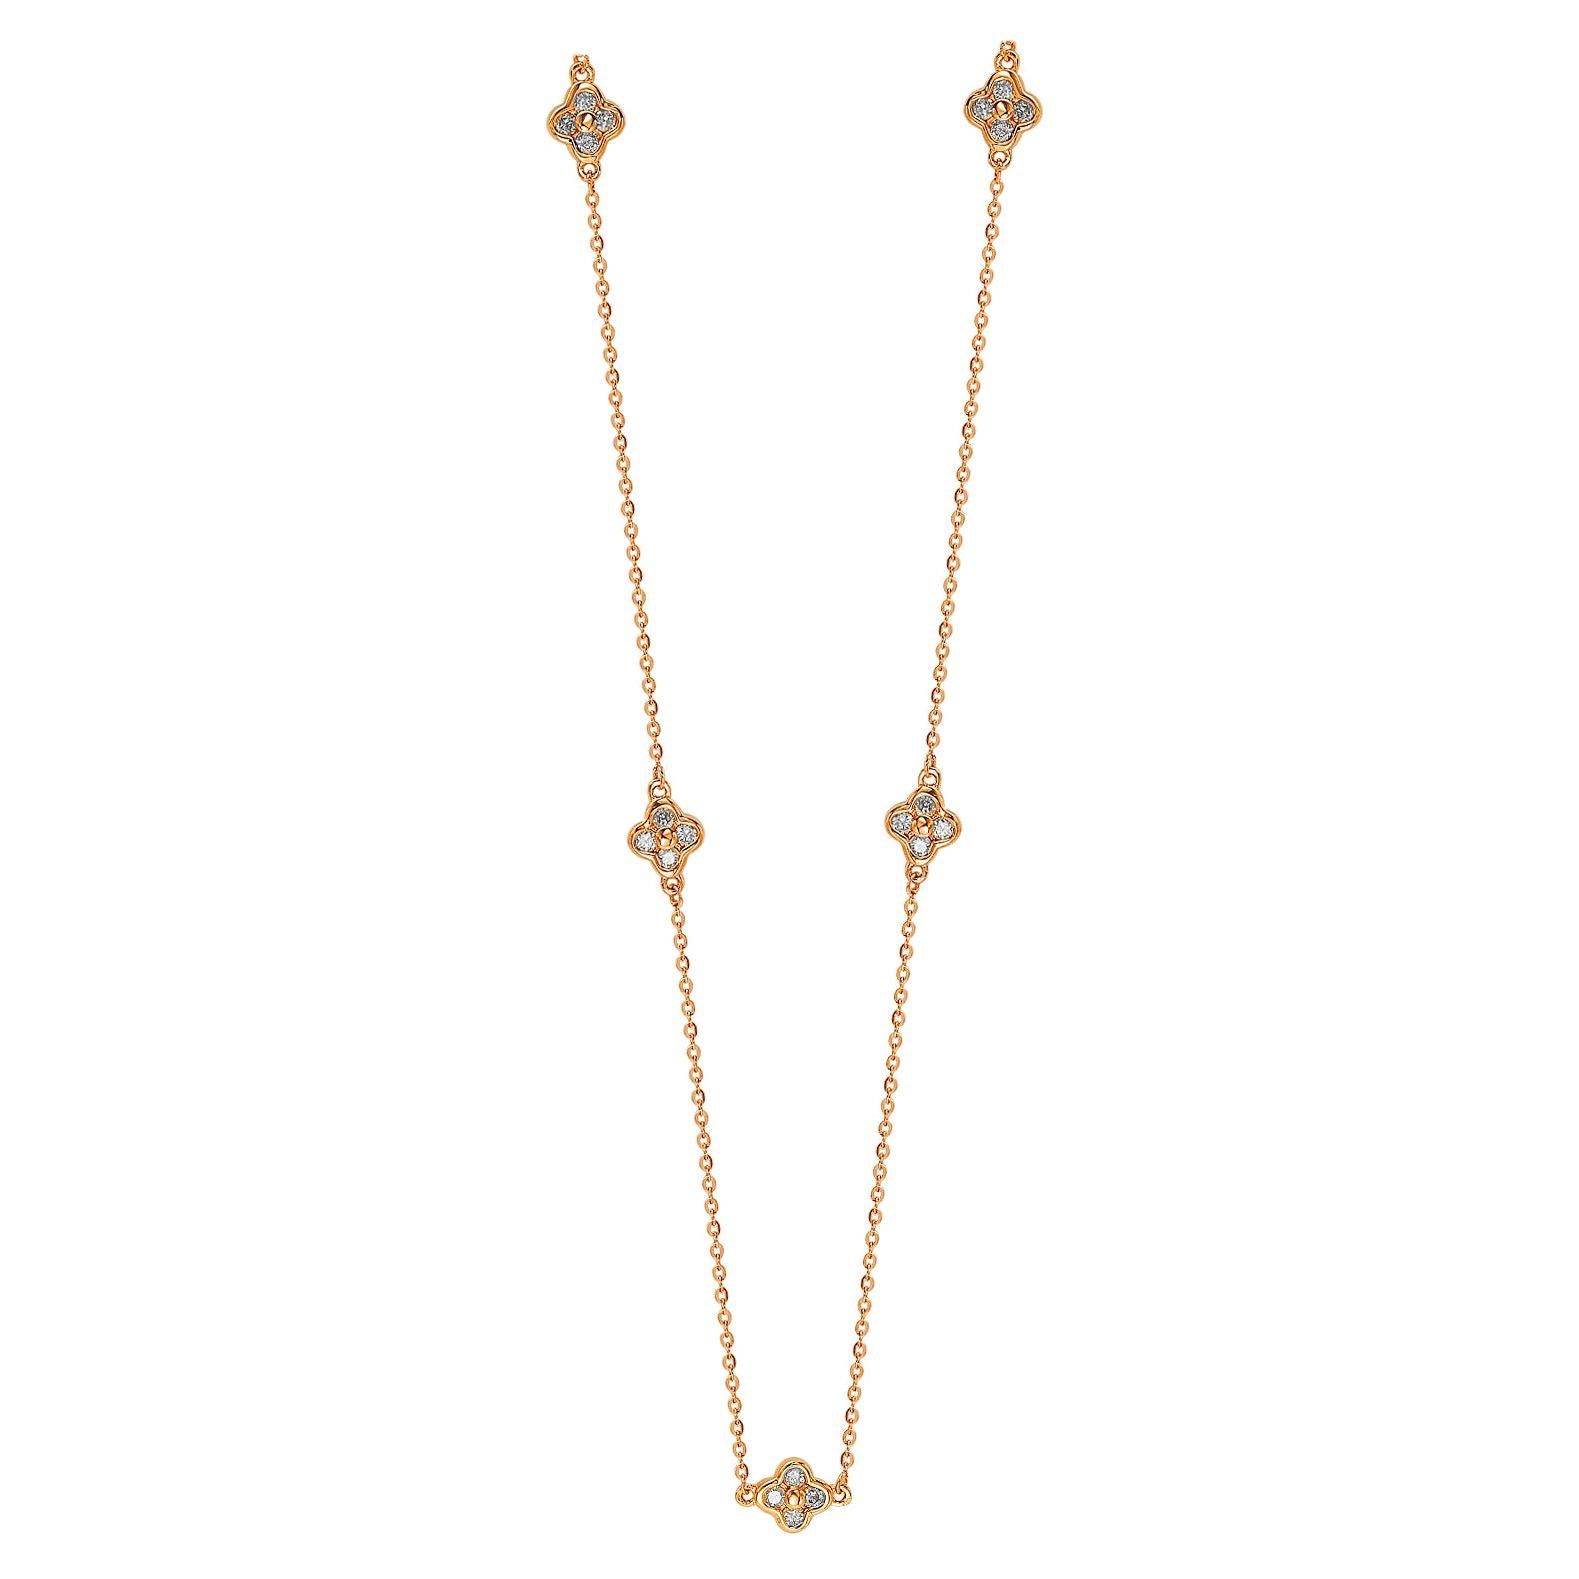 Suzy Levian, Station-Halskette, 14 Karat Roségold, weißer Diamant, 5 Kleeblätter pro Meter